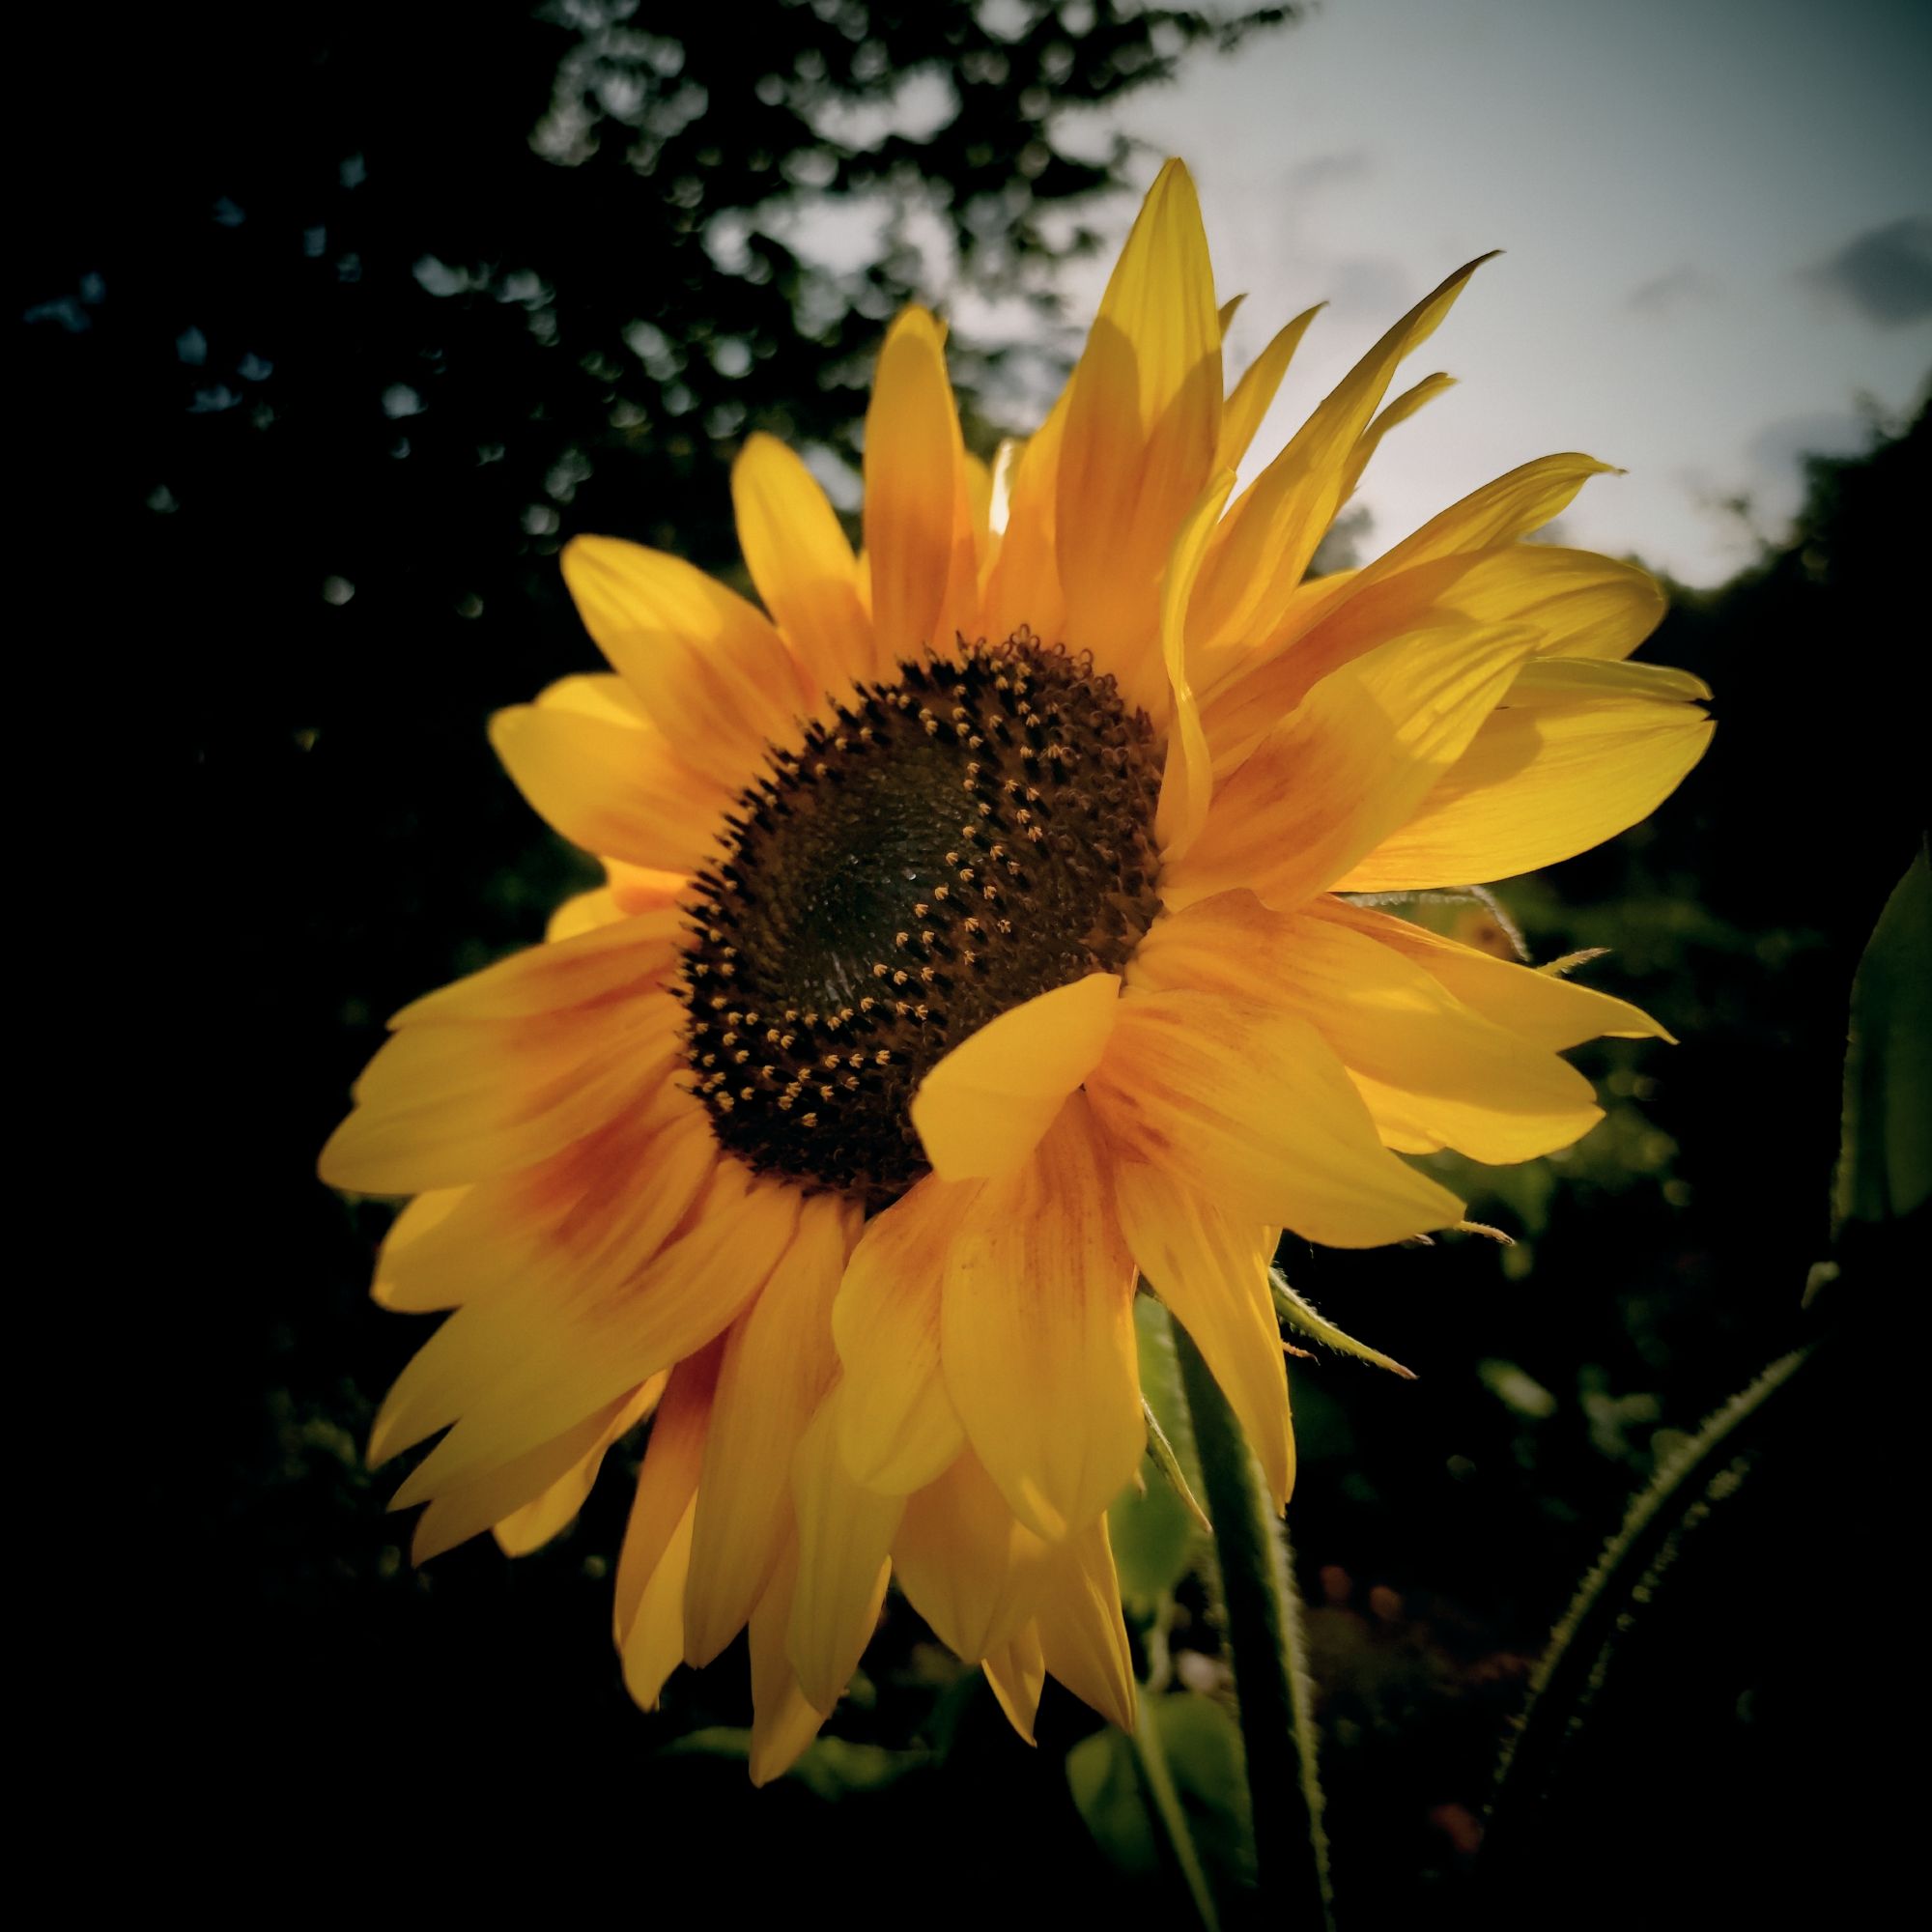 Closeup of a sunflower blossom.